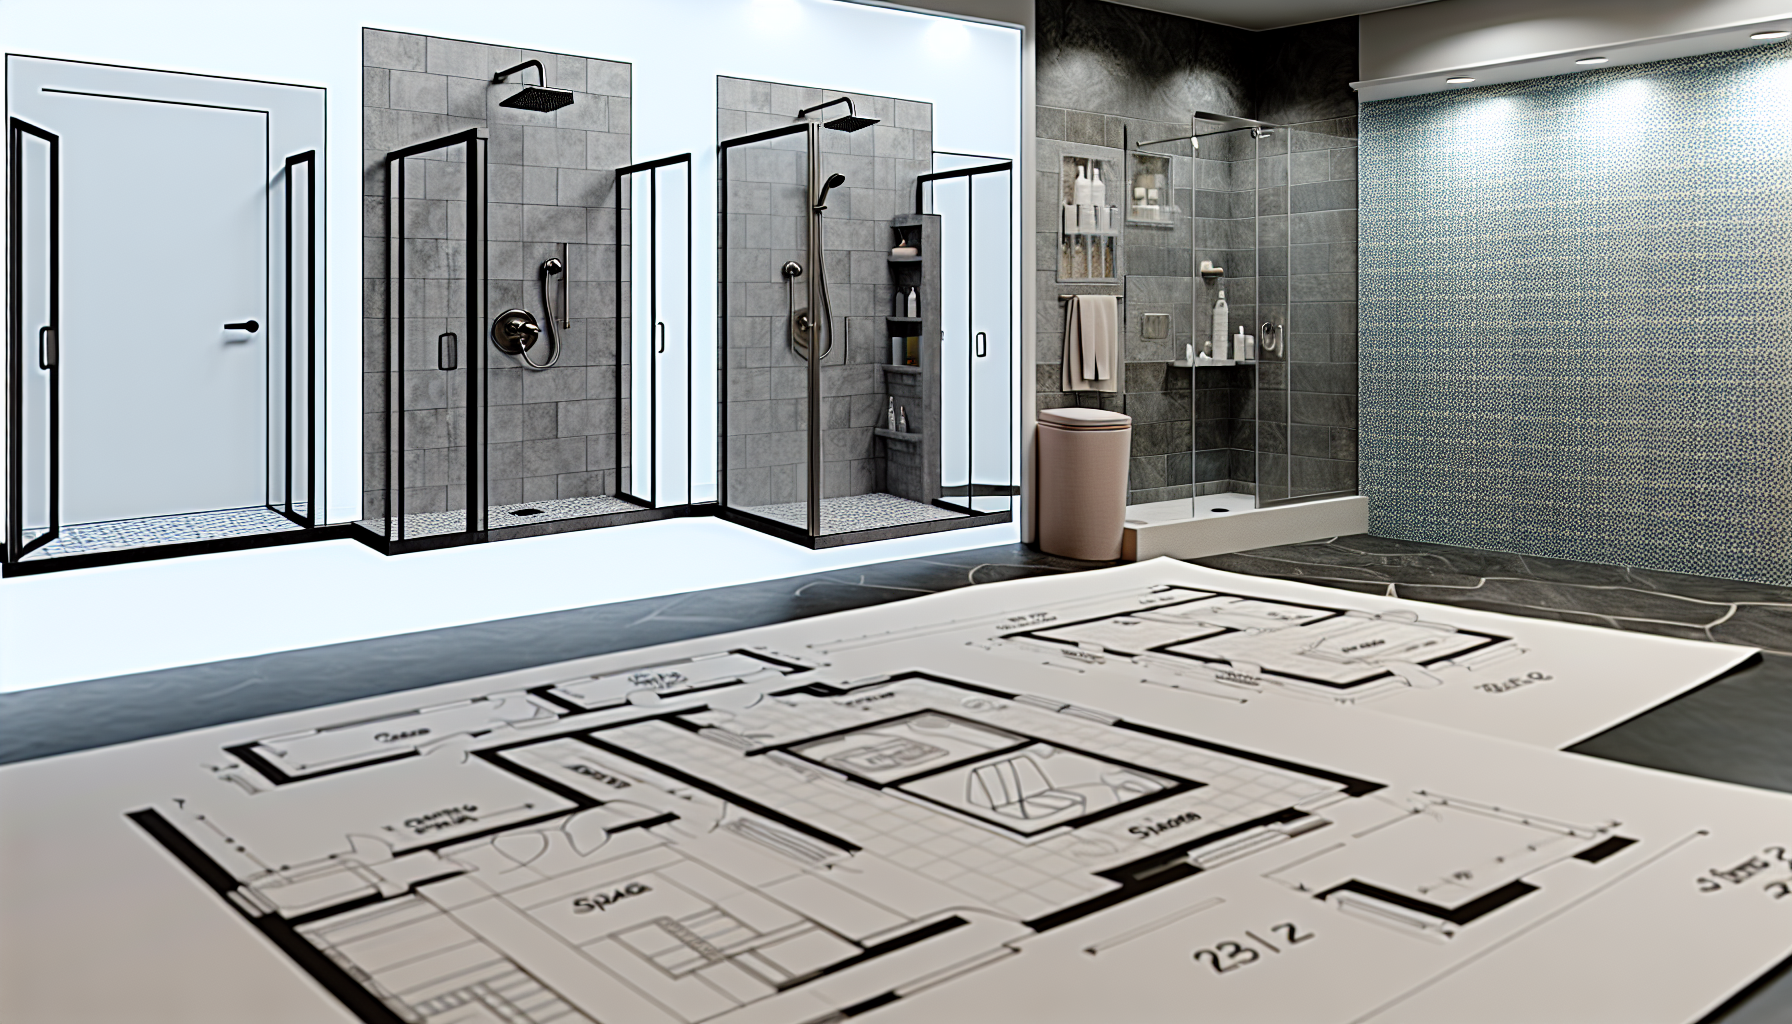 Raumplanung und Anforderungen für begehbare Duschen, einschließlich Größe, Platzbedarf und barrierefreiem Zugang.